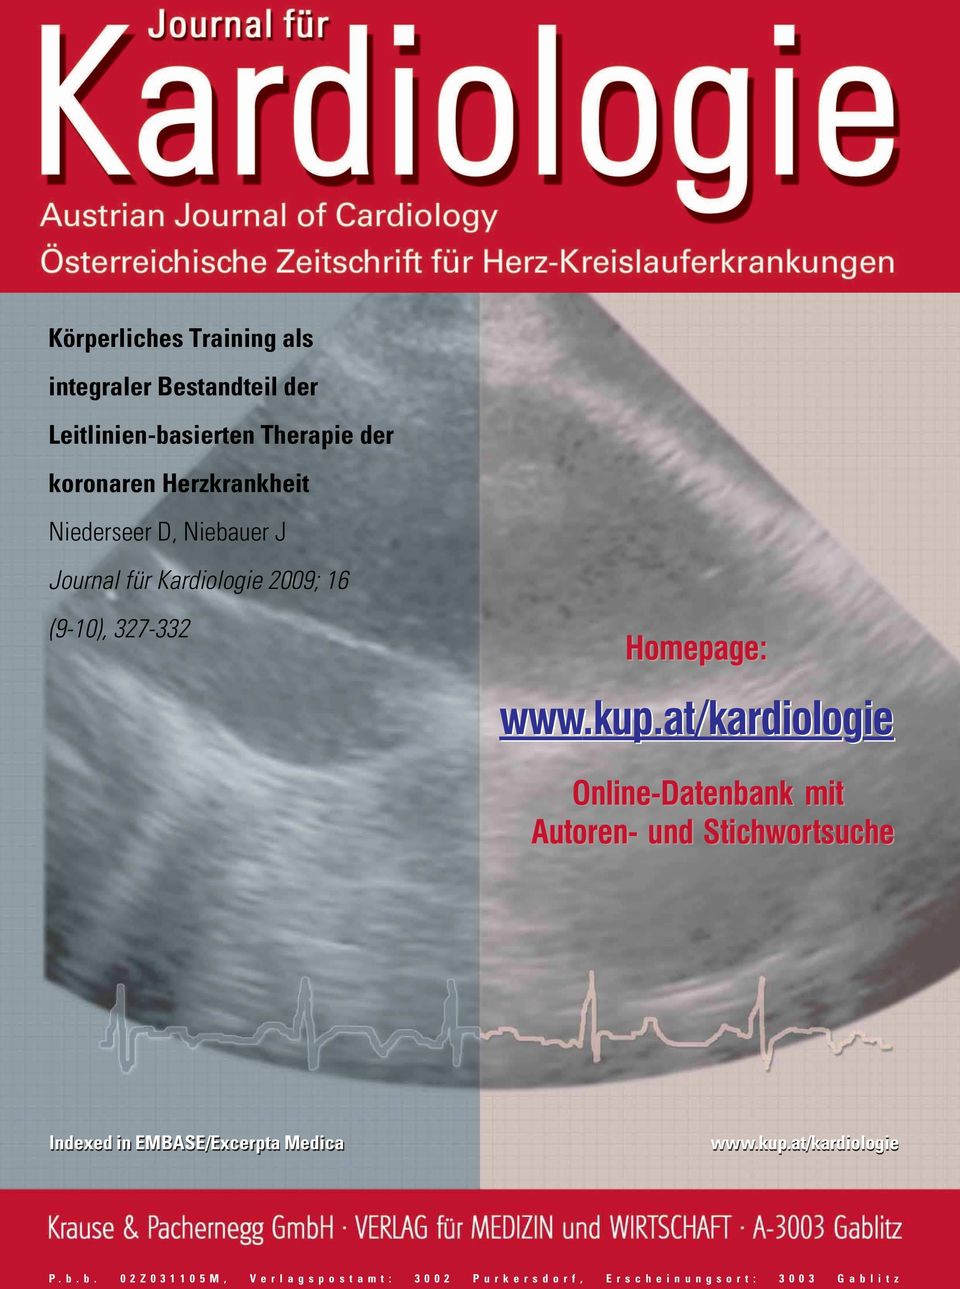 kup.at/kardiologie Online-Datenbank mit Autoren- und Stichwortsuche Indexed in EMBASE/Excerpta Medica